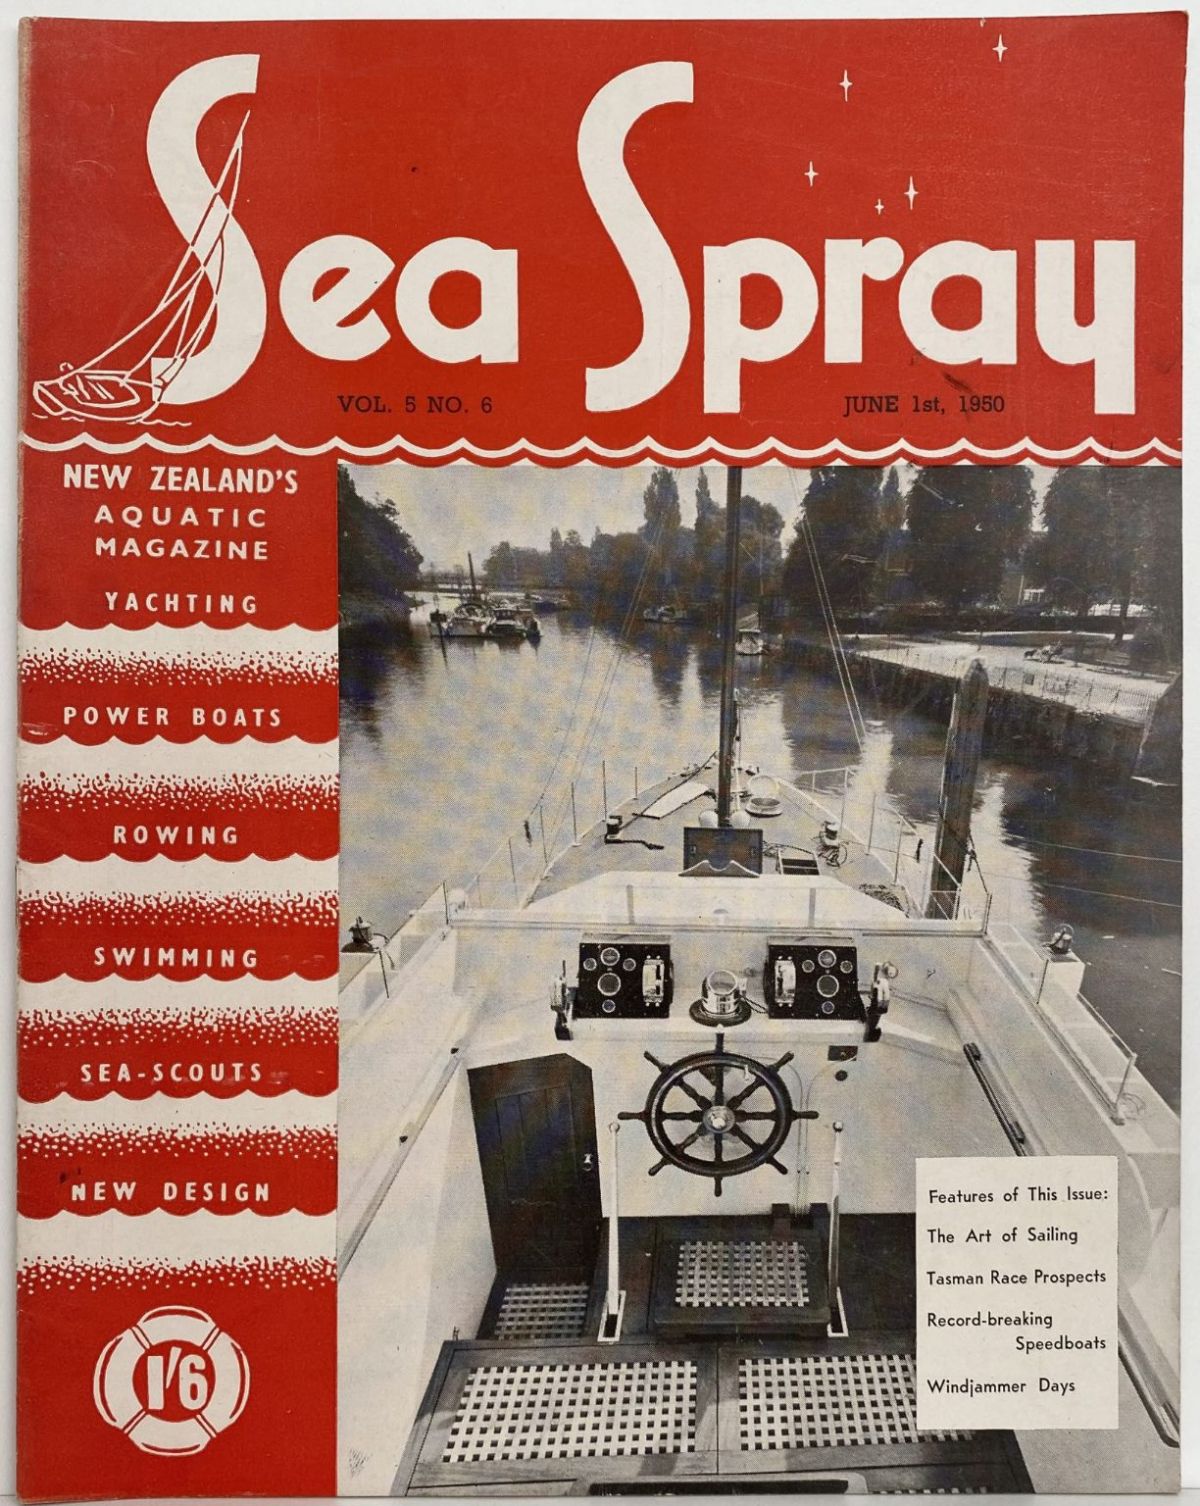 VINTAGE MAGAZINE: Sea Spray - Vol. 5, No. 6 - June 1950